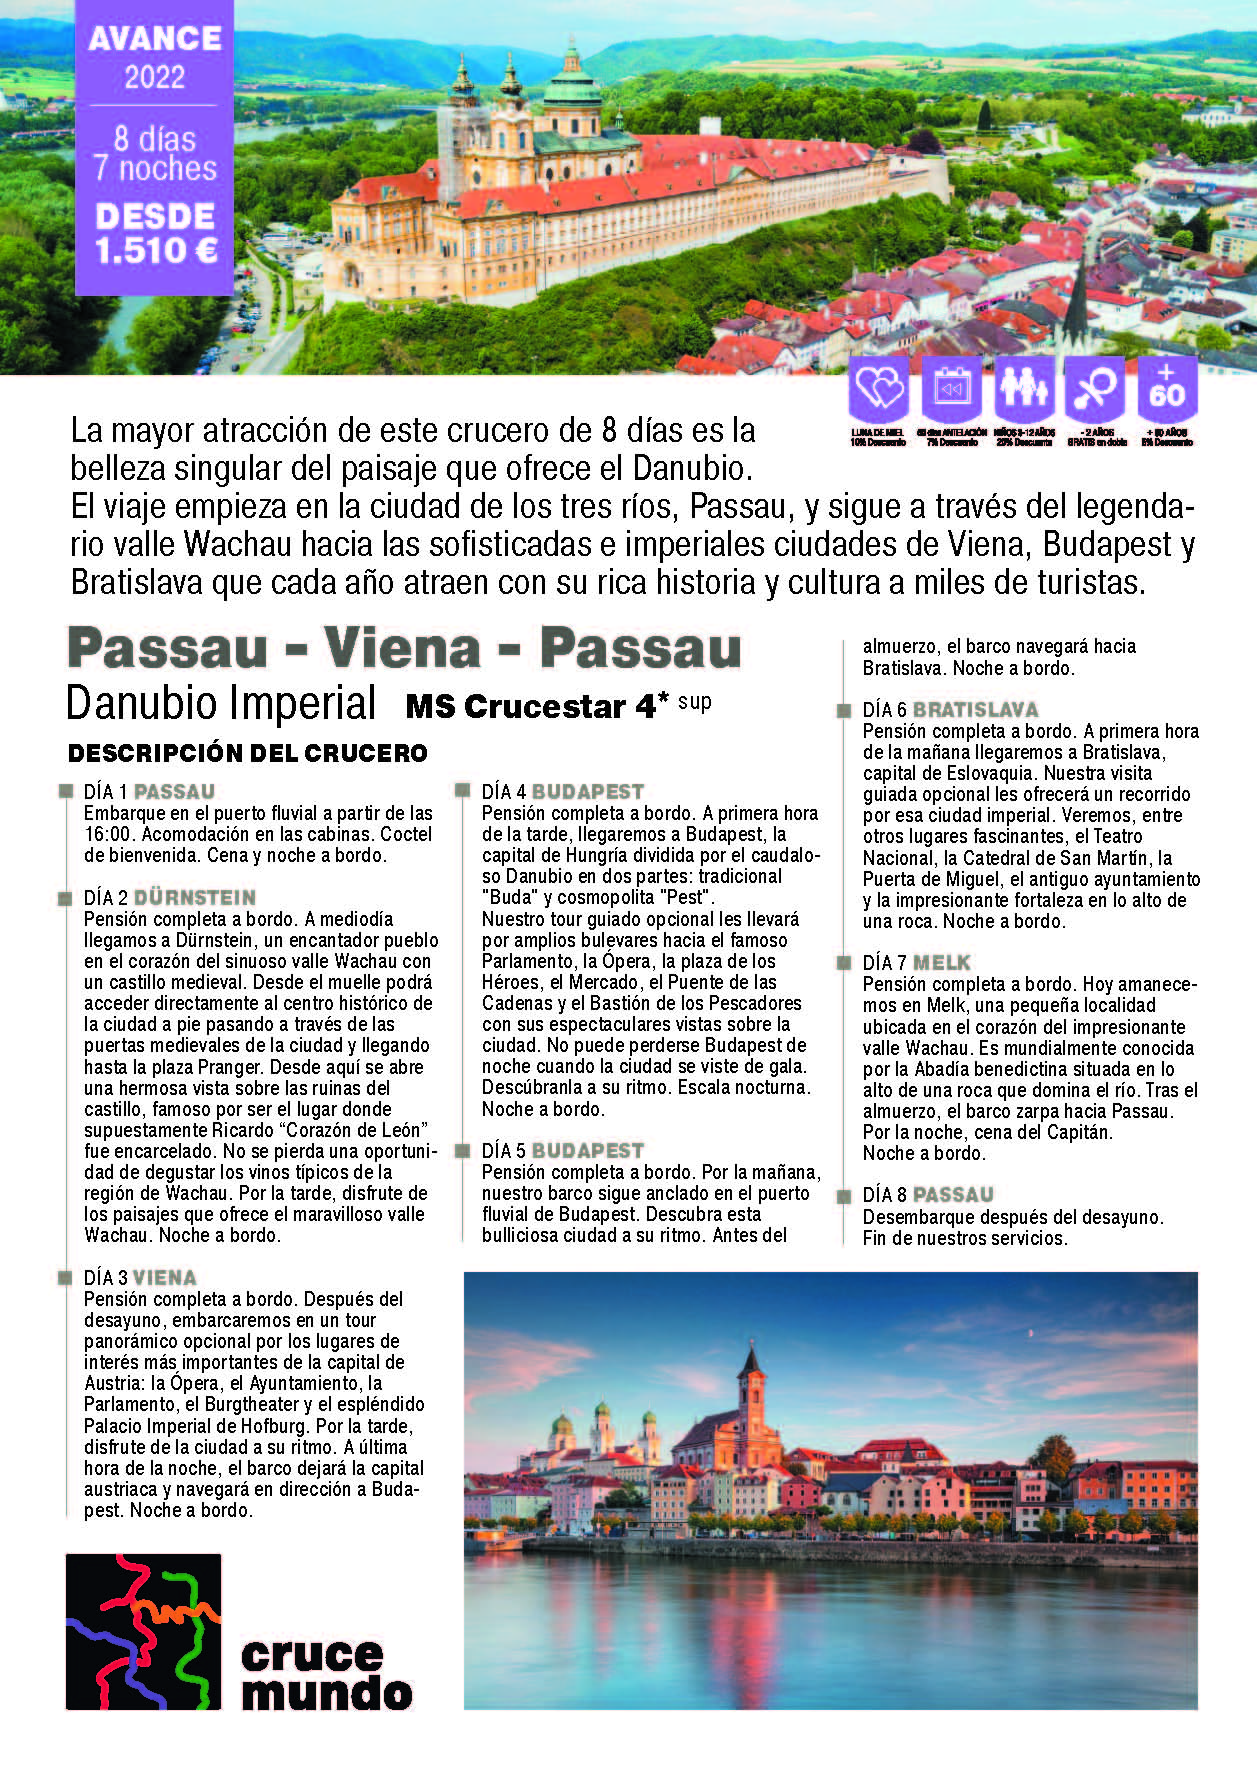 Oferta Crucemundo Danubio Imperial verano 2022 Passau-Viena-Passau